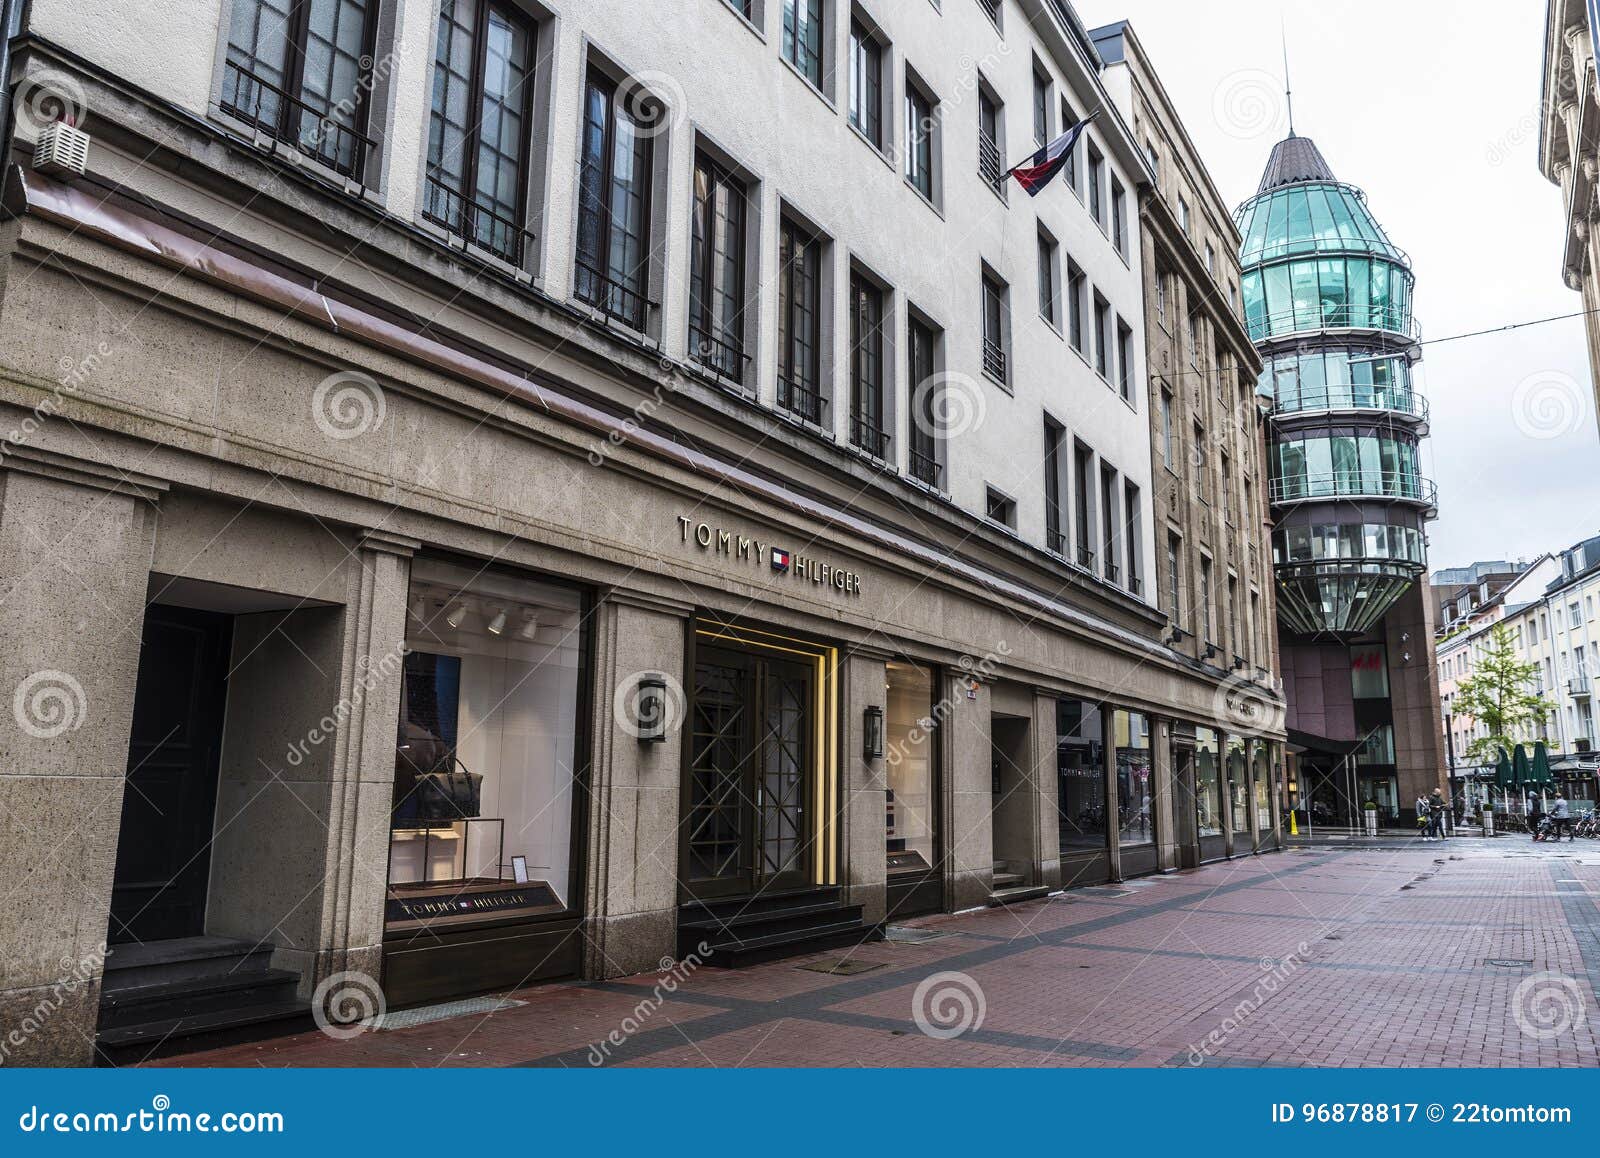 Tommy Hilfiger Shop and Schadow Arkaden Mall in Dusseldorf, Germ Editorial Photography - Image of dusseldorf, hilfiger: